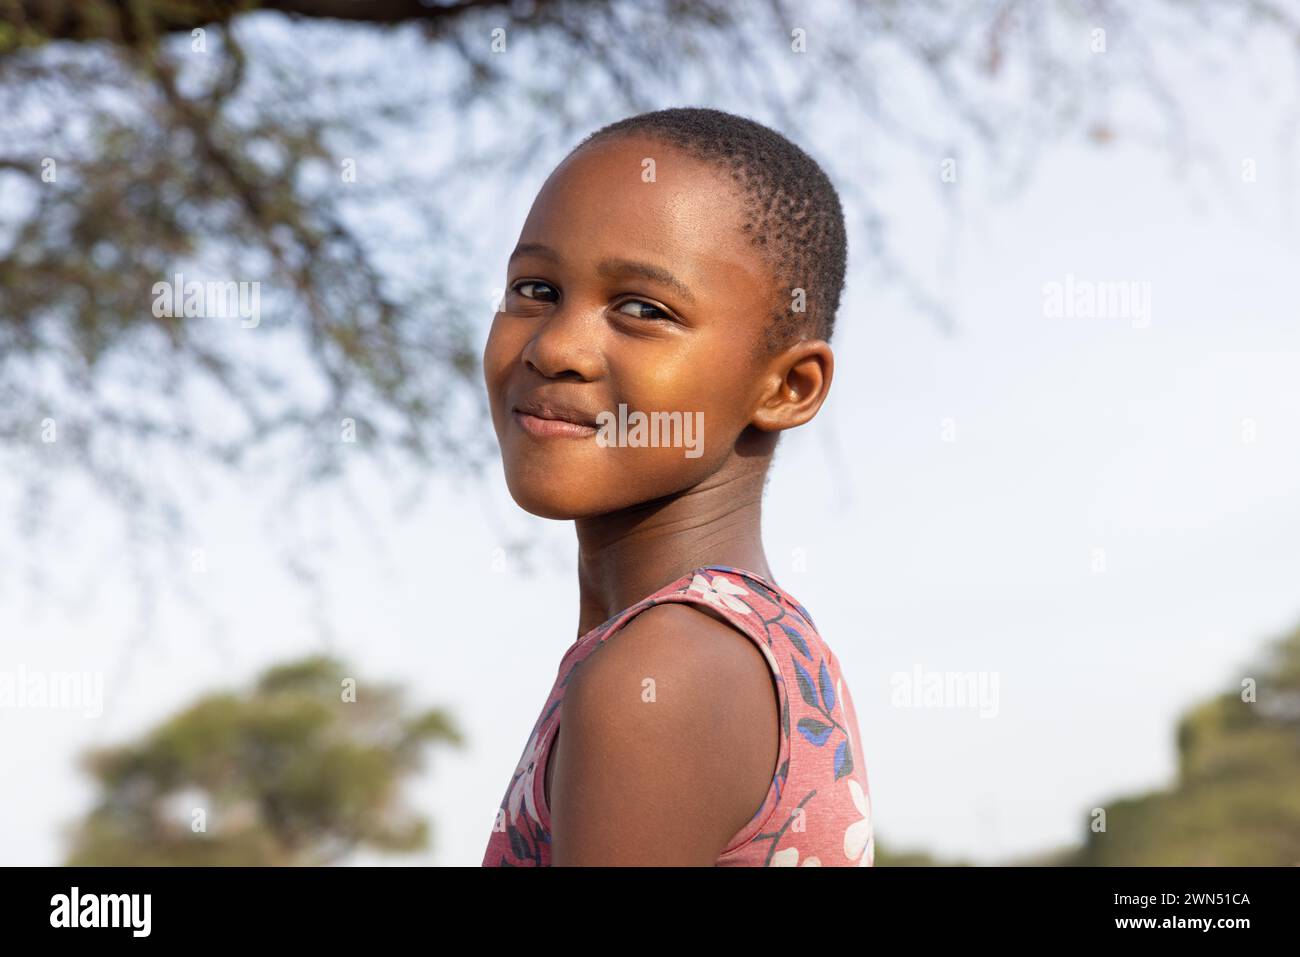 ragazza africana con un grande sorriso di toothy , nel villaggio, in piedi nel cortile accanto ad un albero Foto Stock